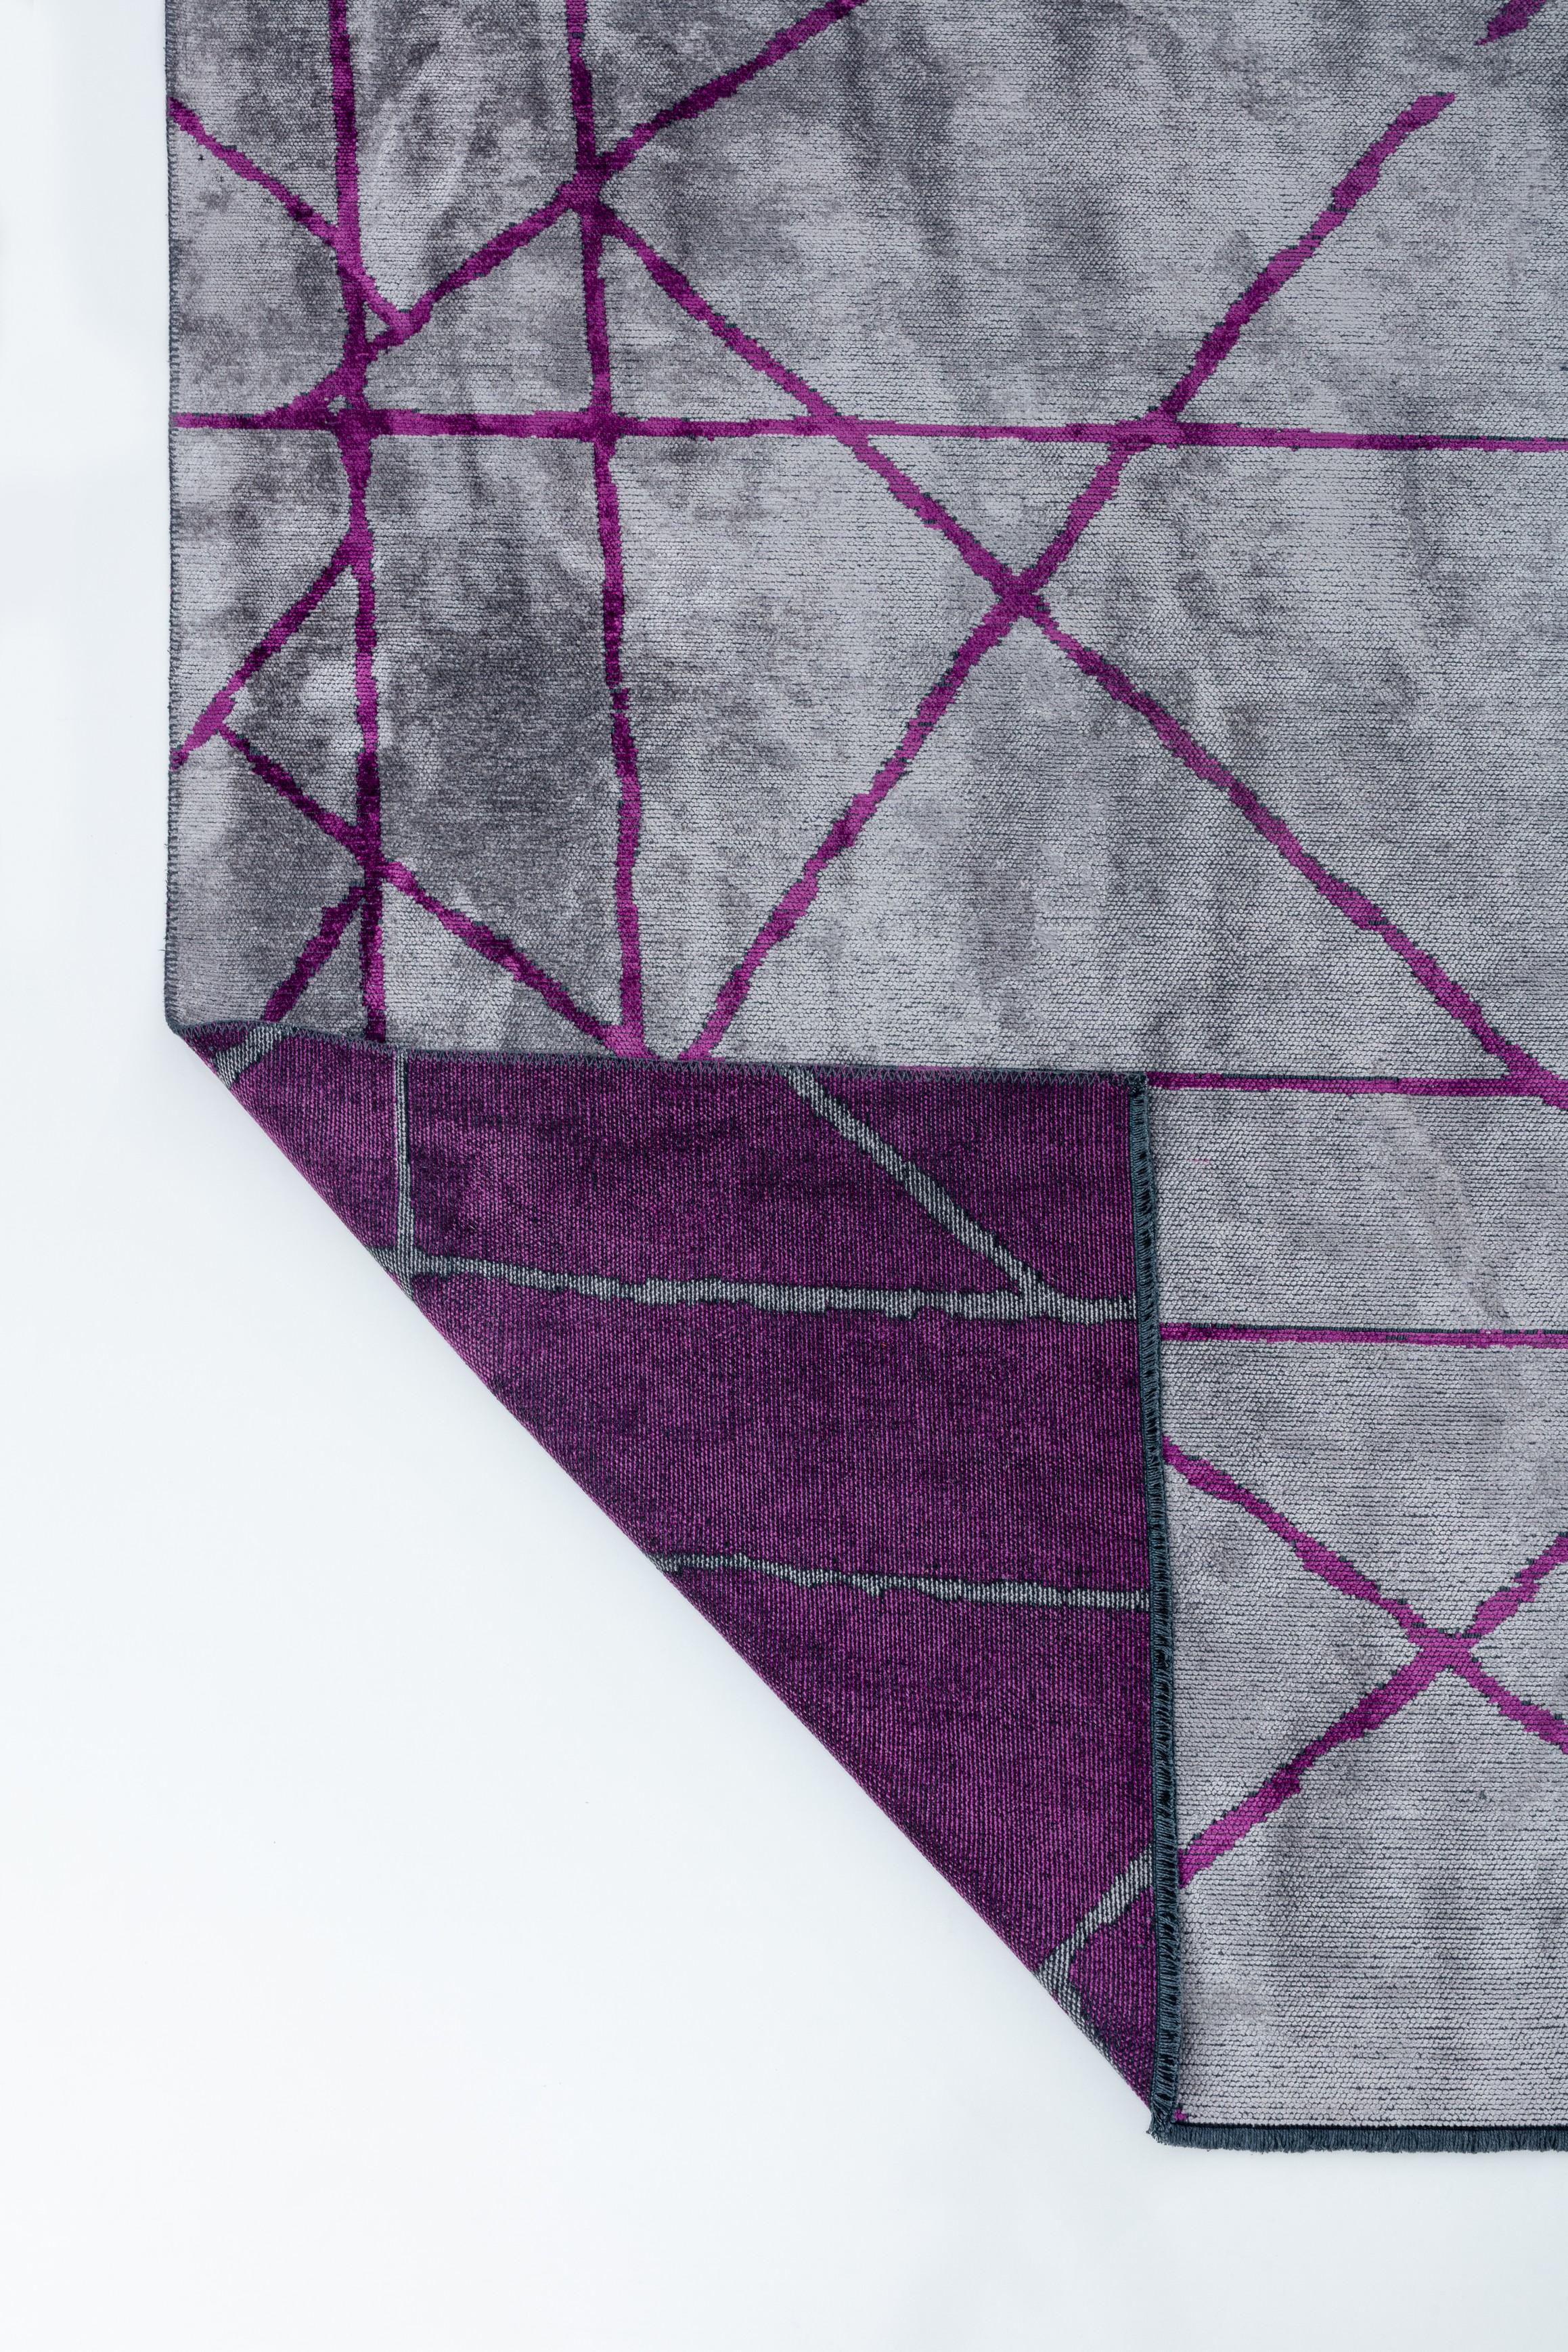 En vente :  (Violet) Moderne  Tapis de sol abstrait de luxe 3